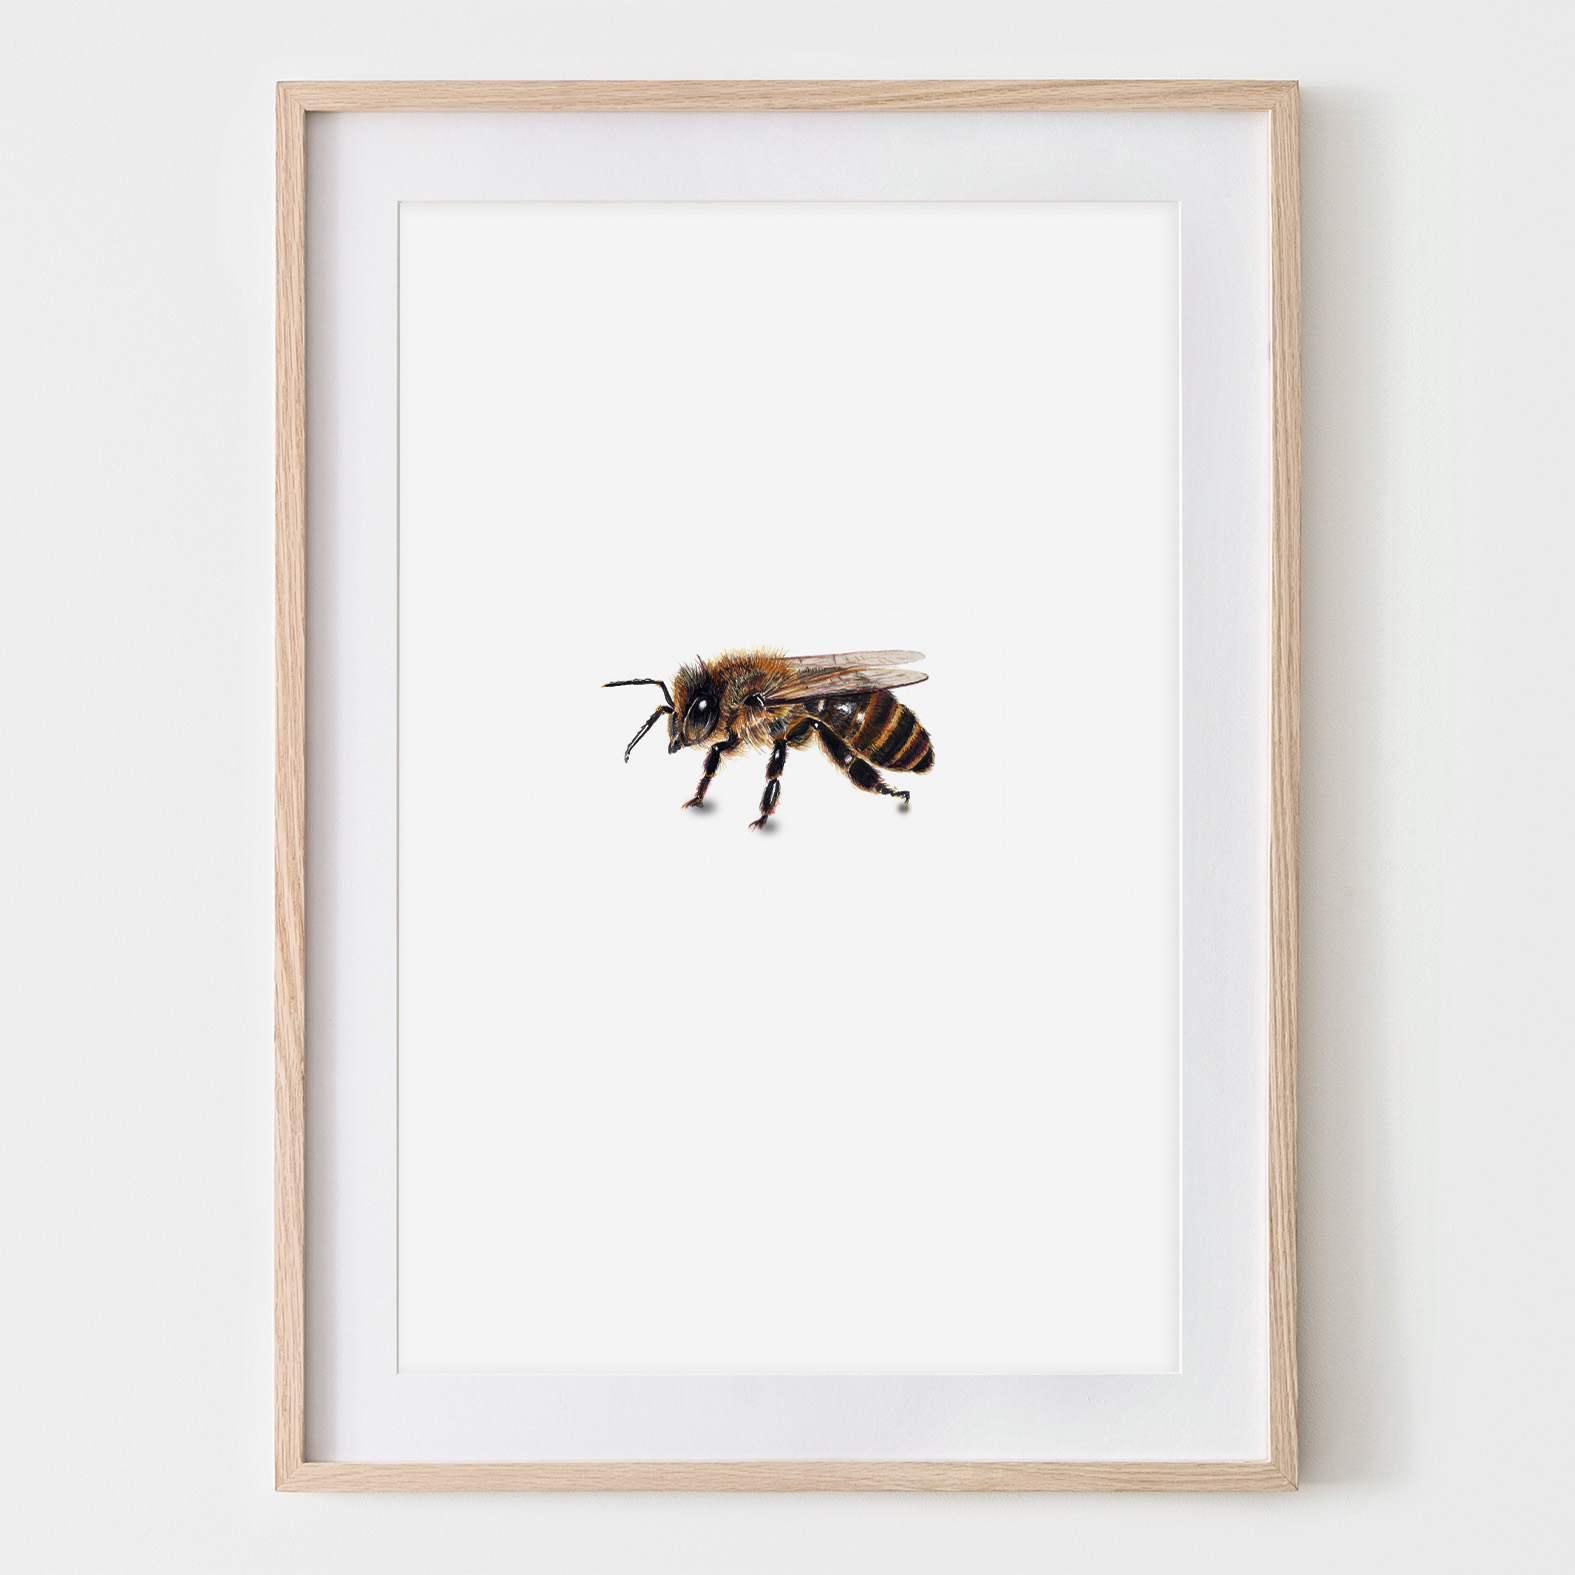 Honigbiene Seitenansicht, Fine Art Print, Giclée Print, Poster, Kunstdruck, Zeichnung, DIN A4